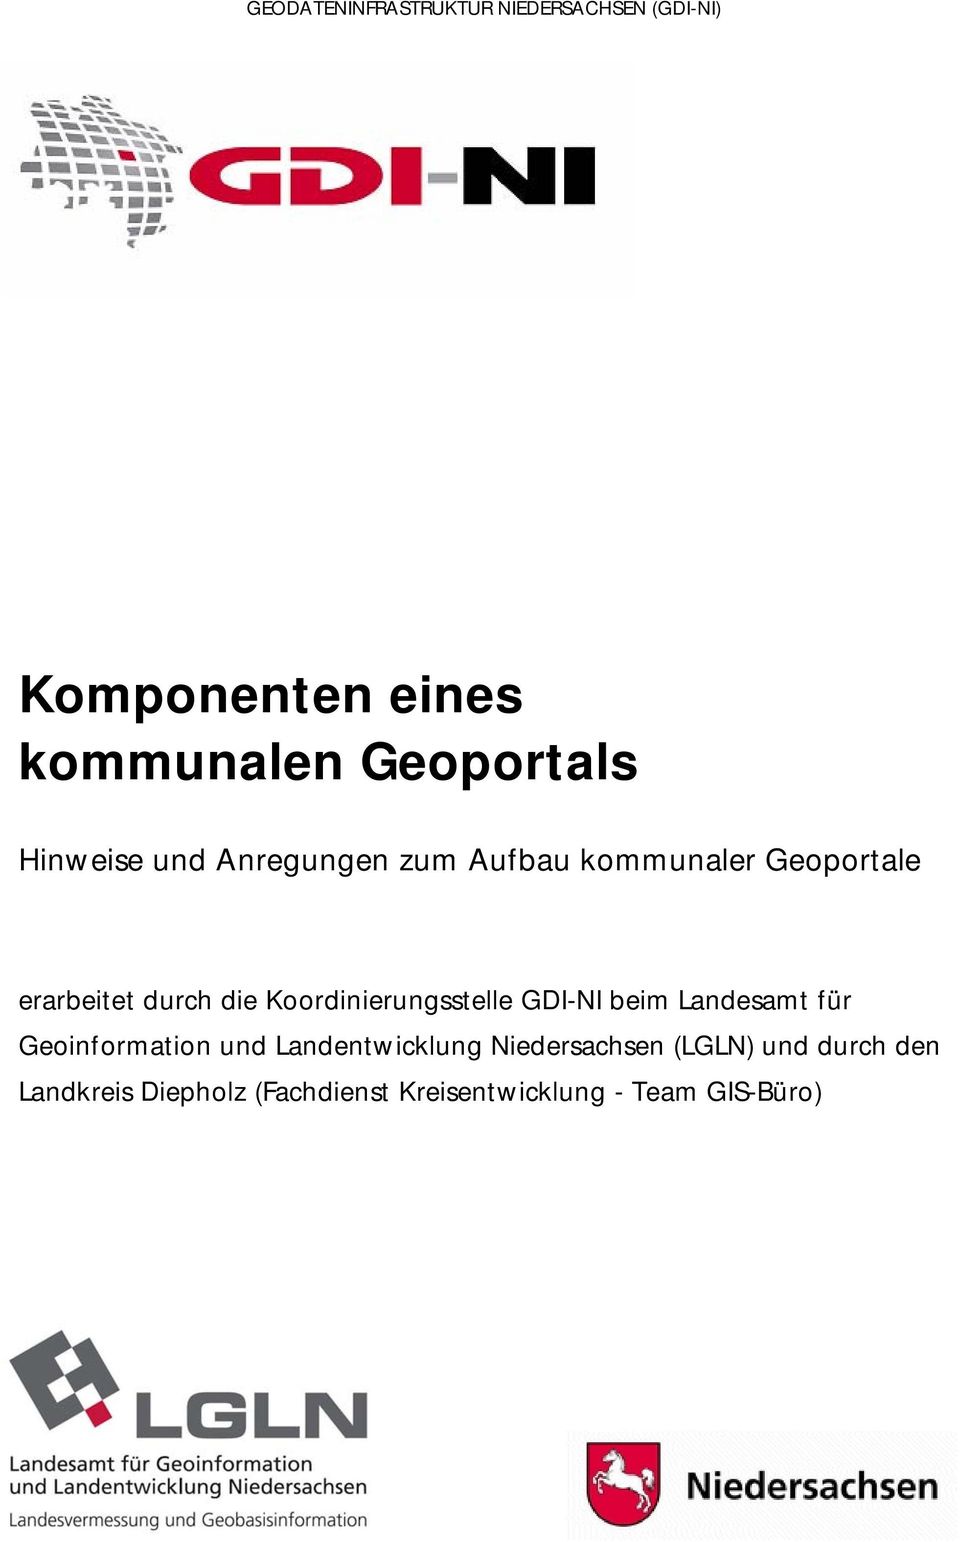 Koordinierungsstelle GDI-NI beim Landesamt für Geoinformation und Landentwicklung